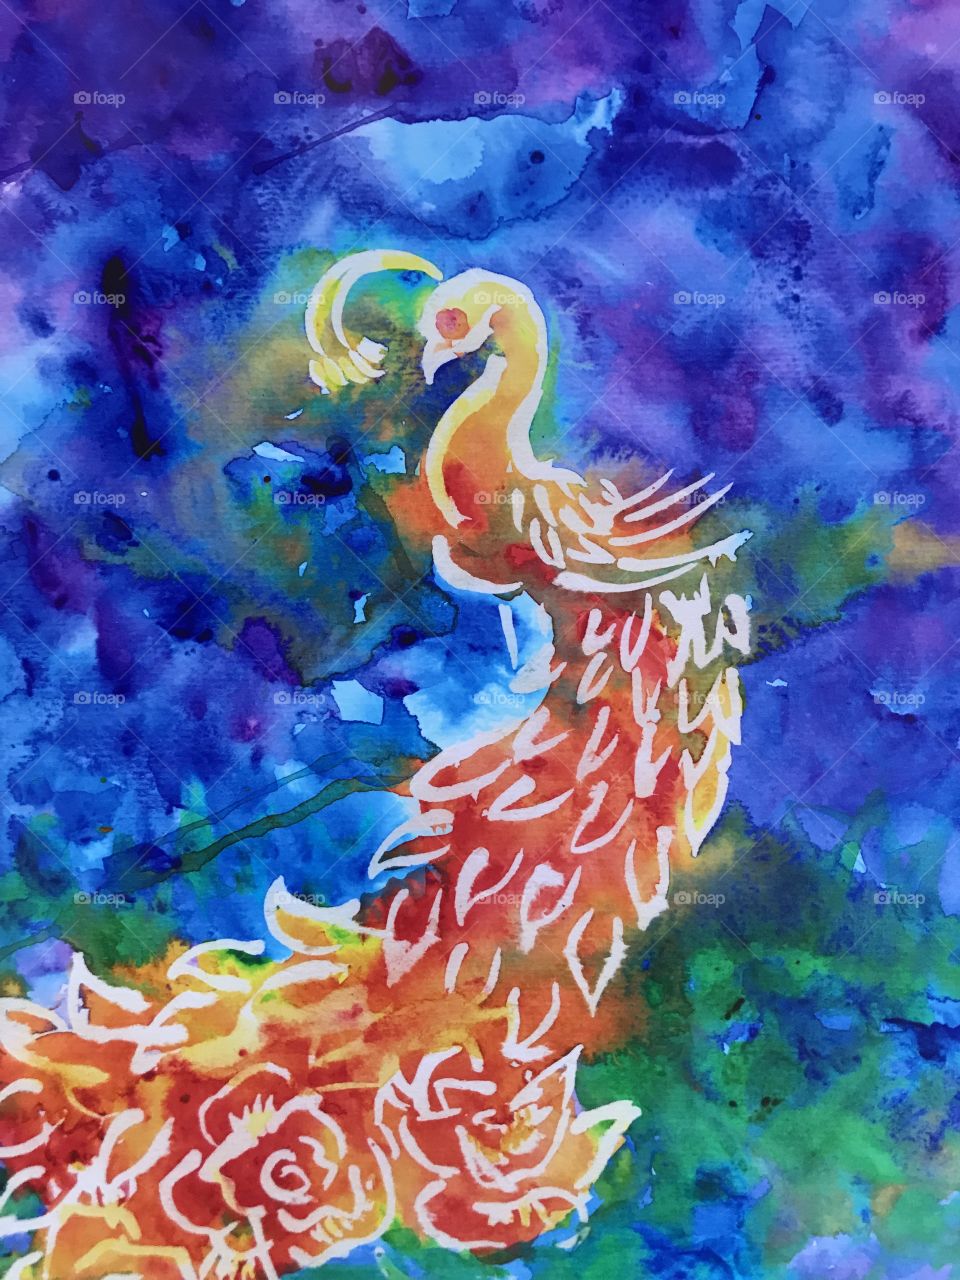 “Melding calm” original peacock watercolor painting 